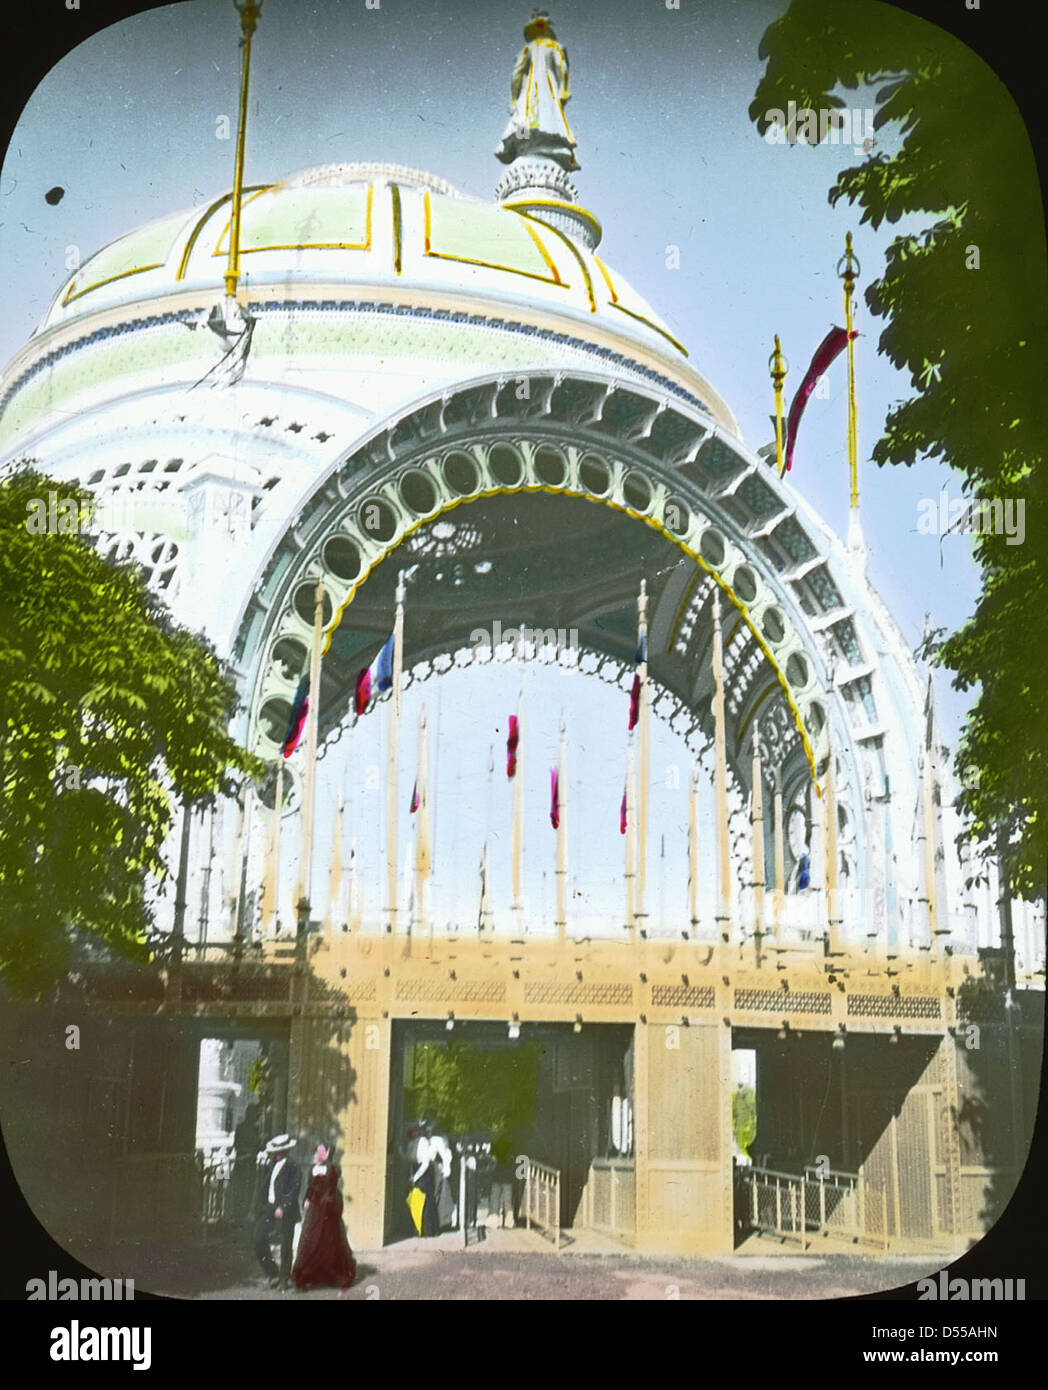 Paris Exposition: Place de la Concorde, entrance gate, Paris, France, 1900 Stock Photo